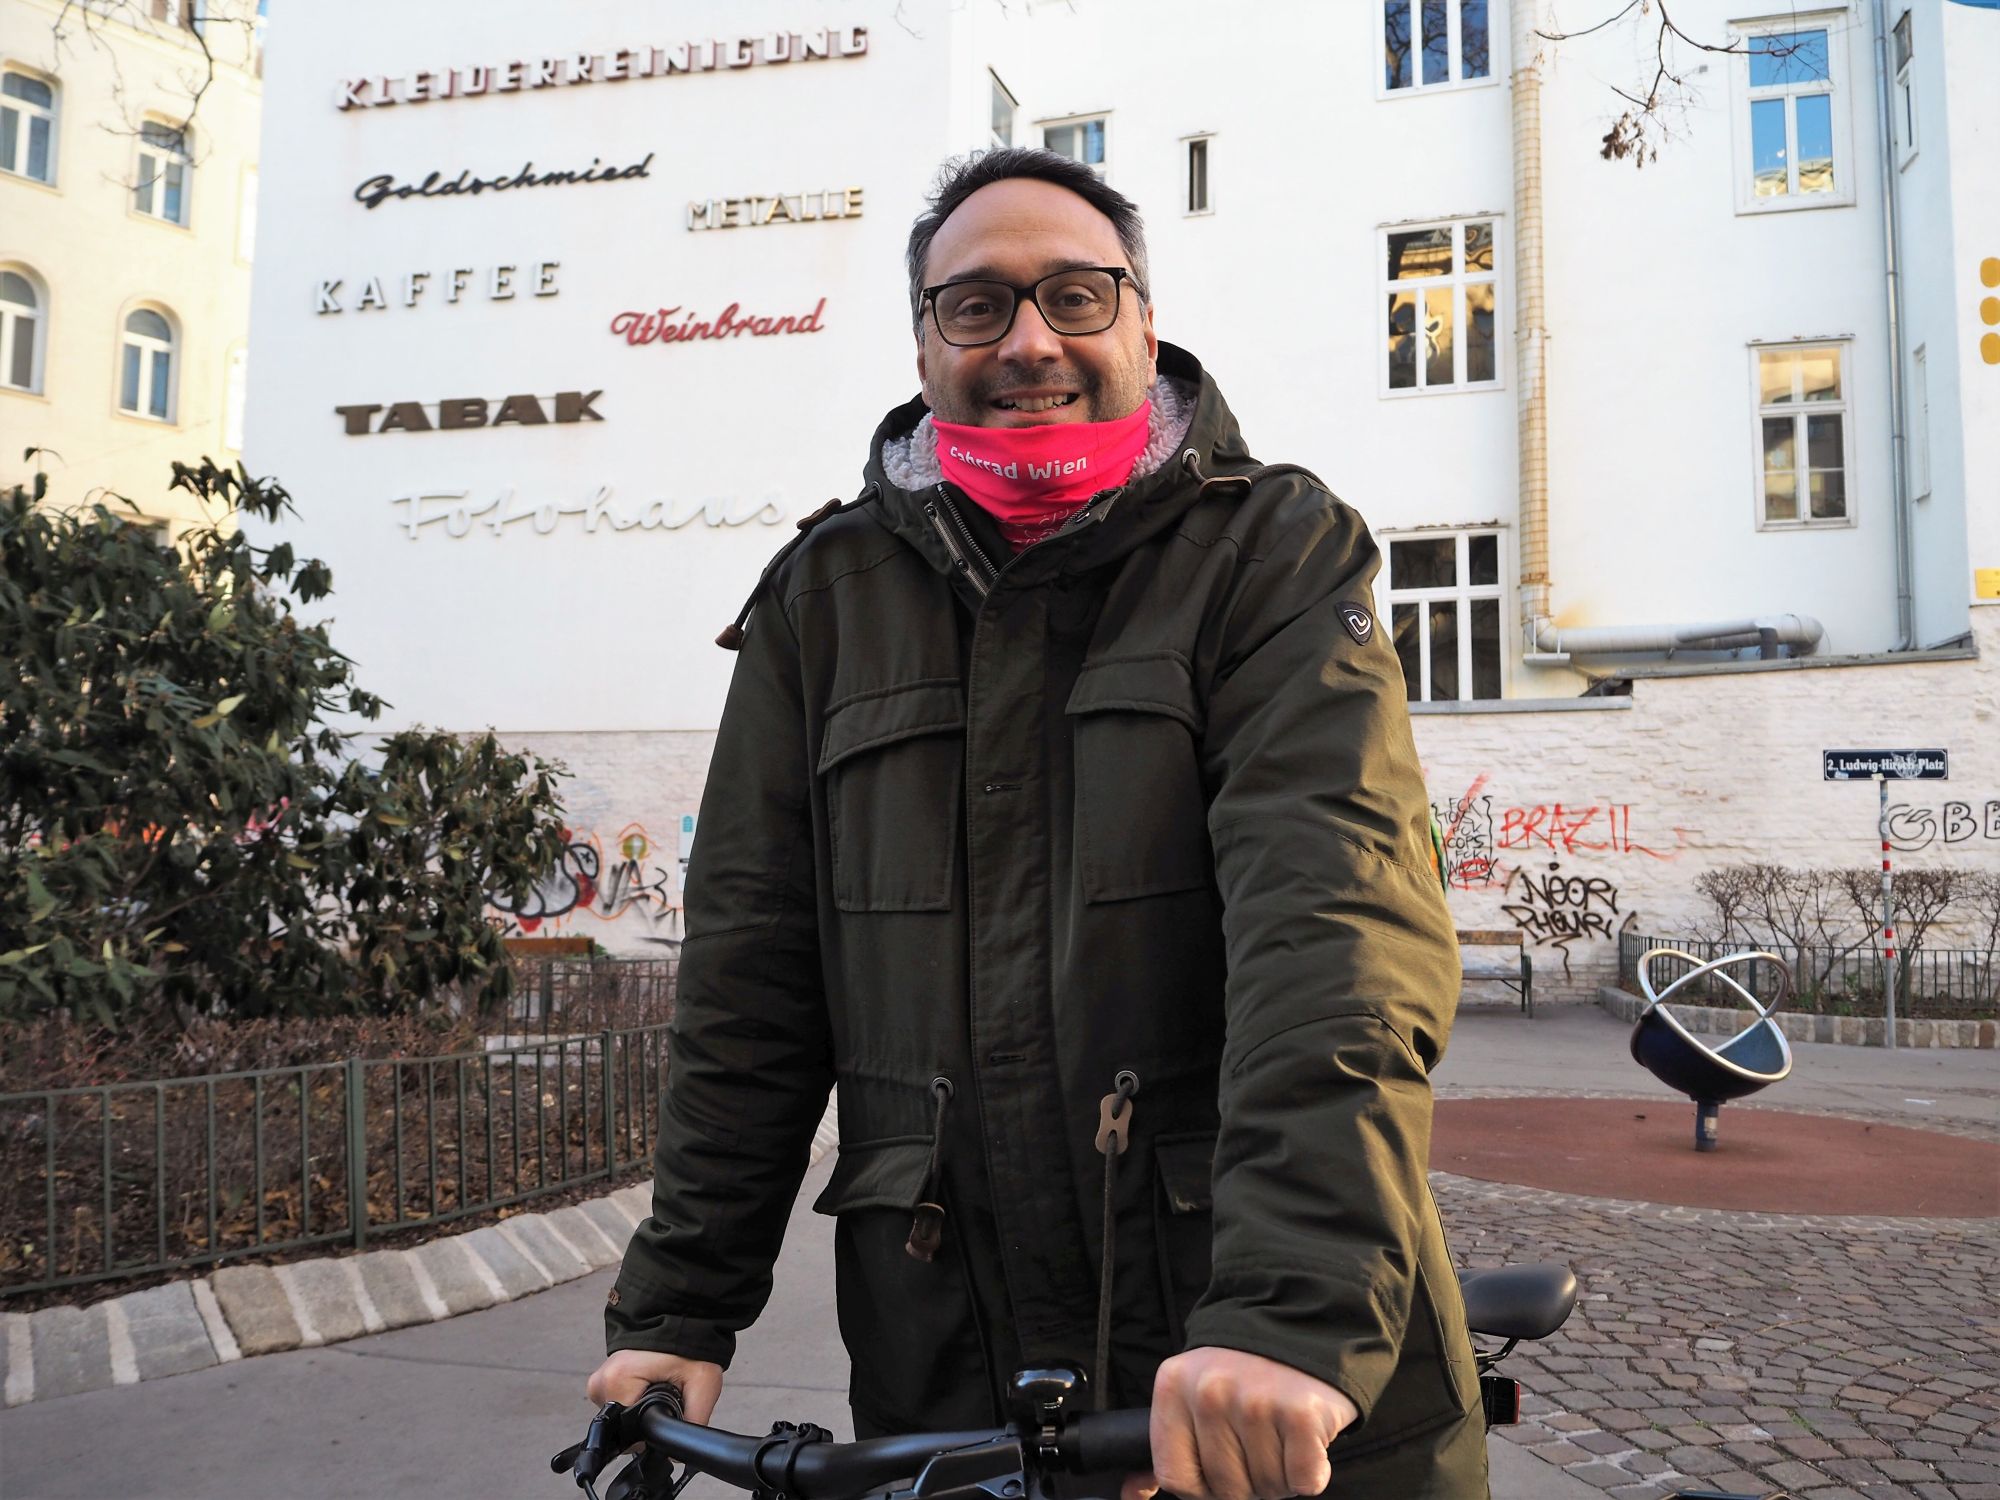 Radfahrer mit Multifunktionstuch am Ludwig-Hirsch-Platz